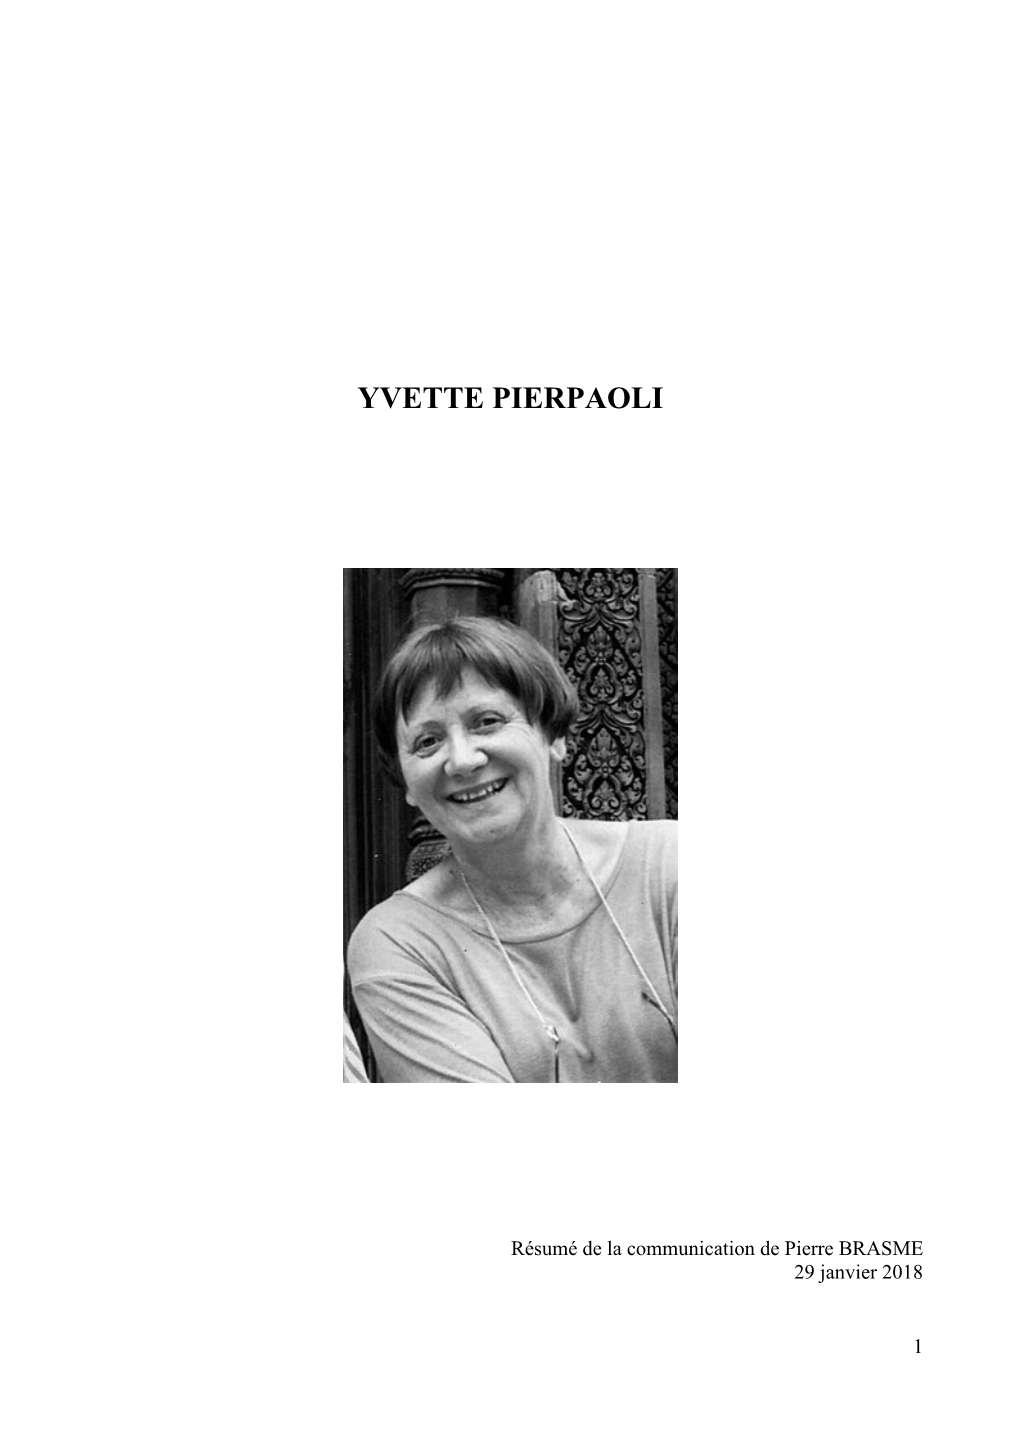 Yvette Pierpaoli